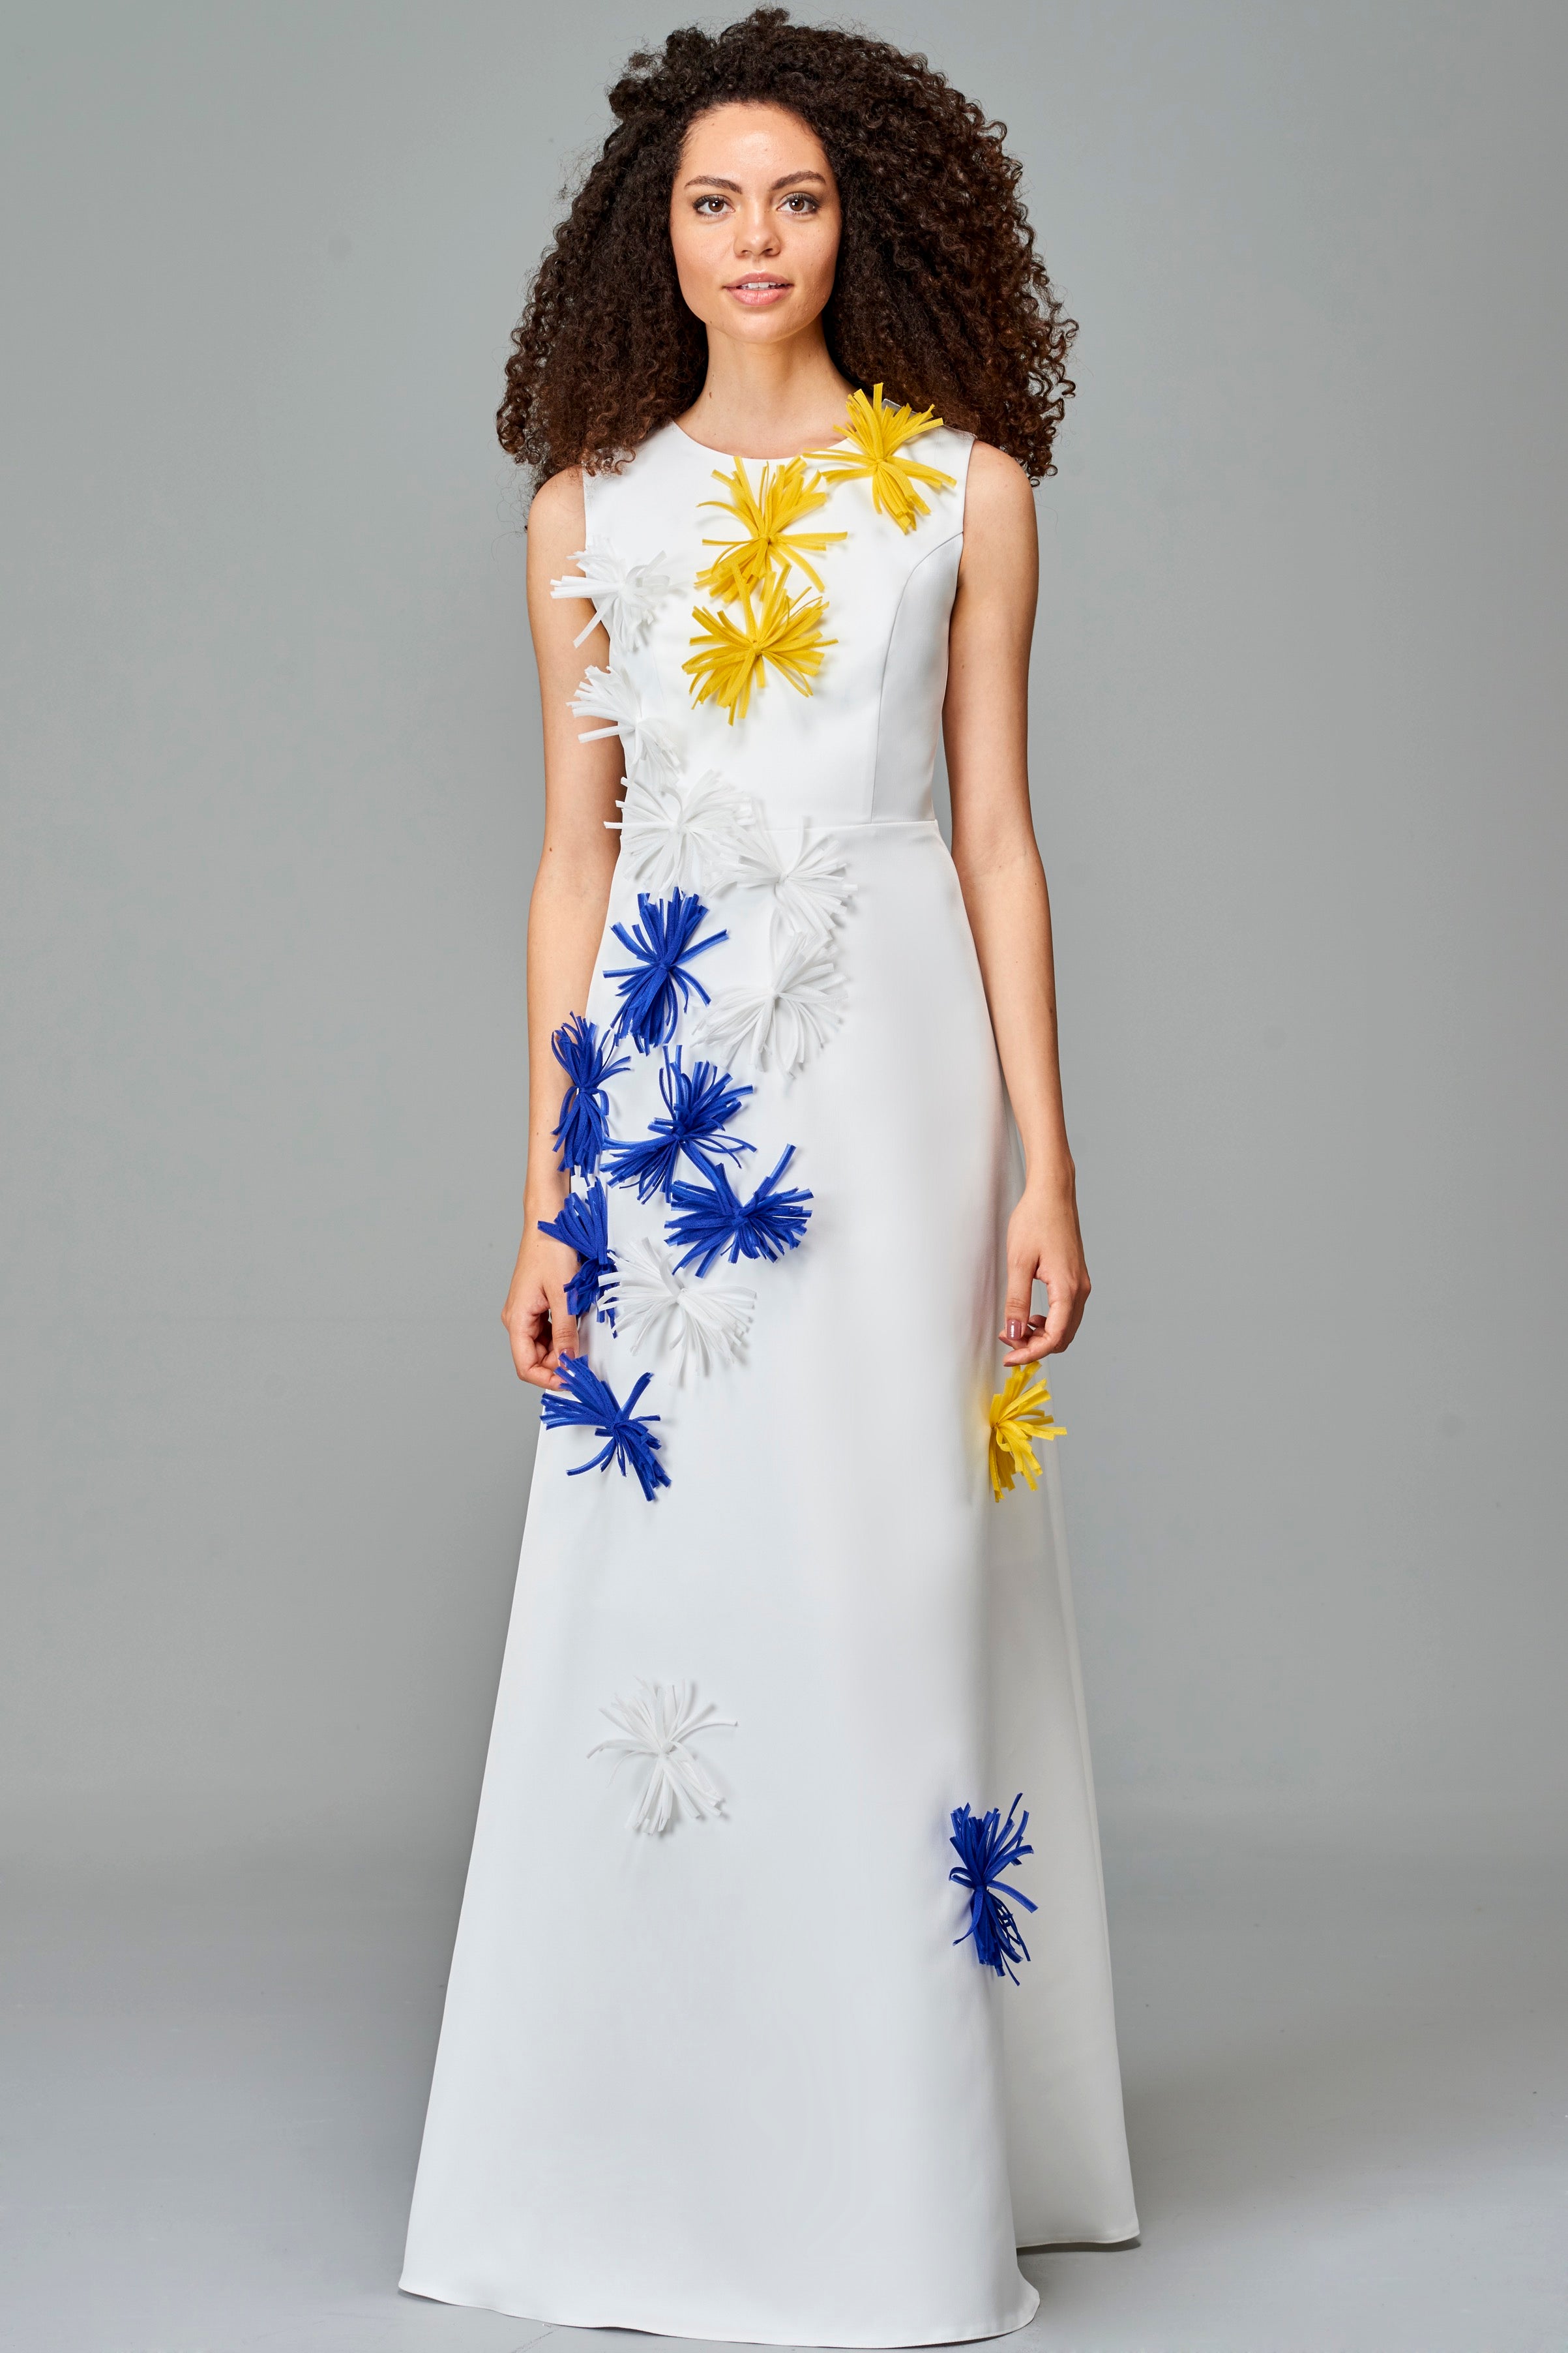 3D Colorful Applique Detailed Dress